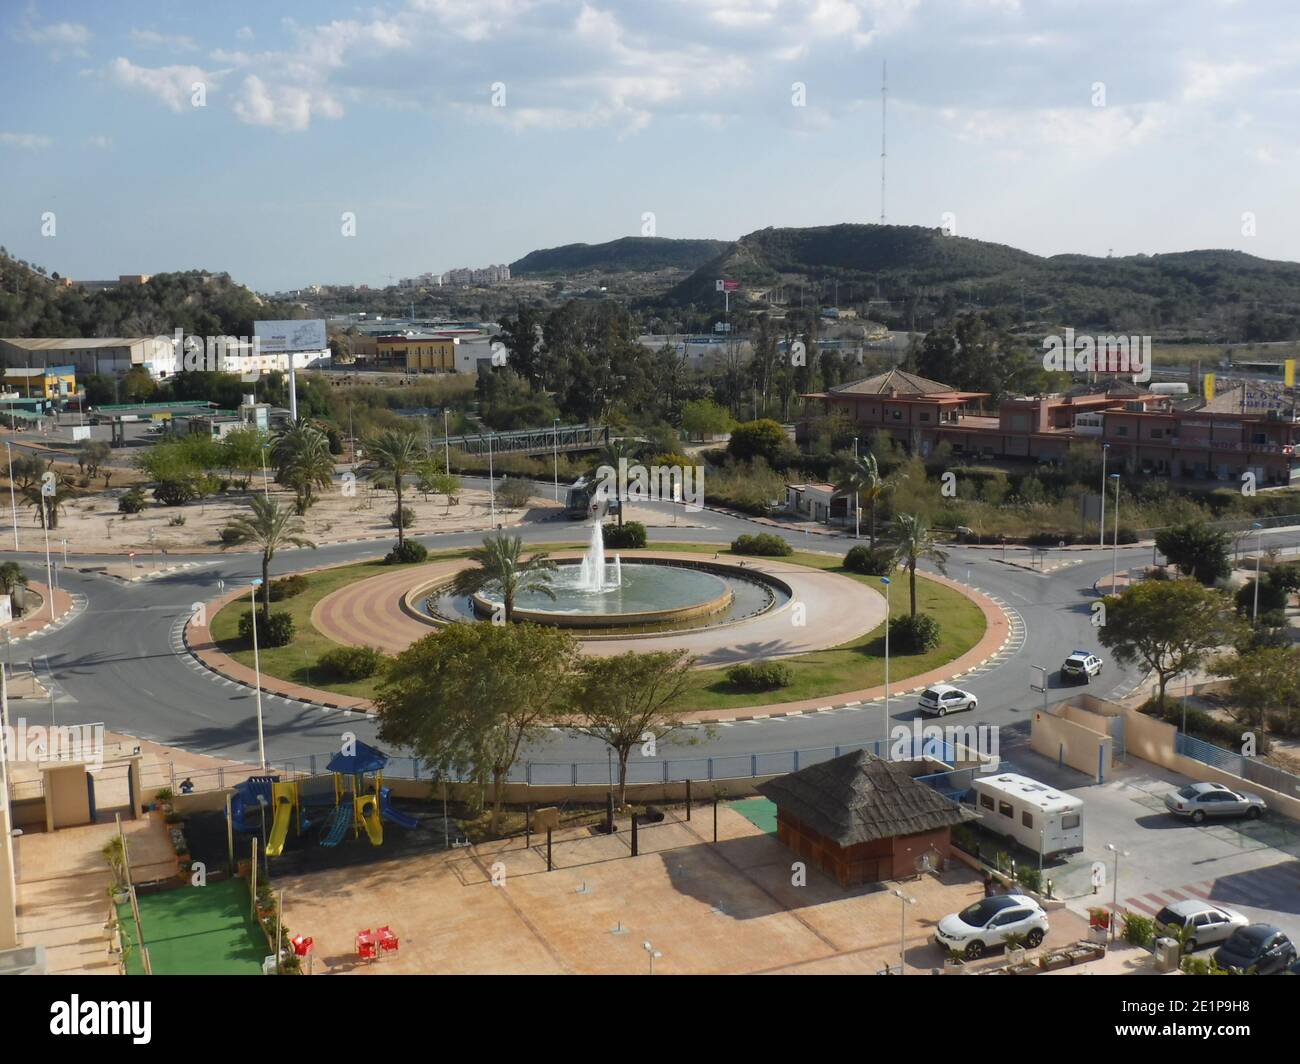 Die Hauptverkehrsknotenpunkt am Stadtrand von Guardamar in Alicante, Spanien. Es hat einen Brunnen in der Mitte, um Besucher des Resorts willkommen zu heißen. Stockfoto